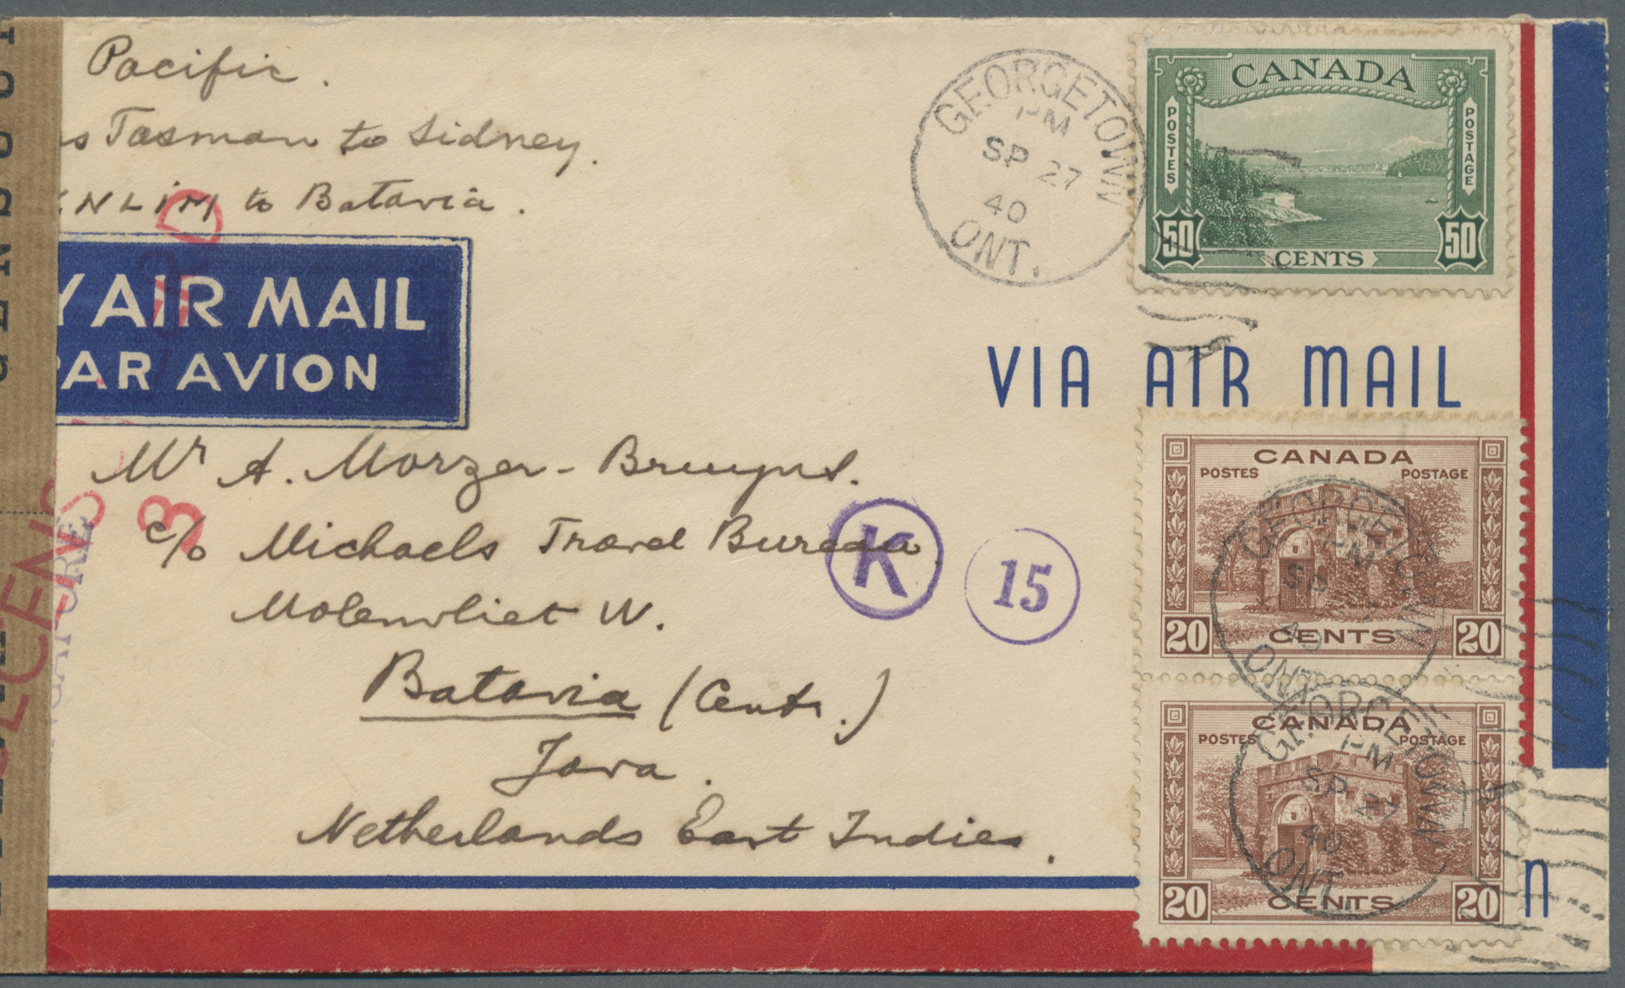 Br Niederländisch-Indien: 1940. Air Mail Envelope Addressled To Batavia, Java, Netherlands Lndies Bearing Canada SG 365, - Indes Néerlandaises